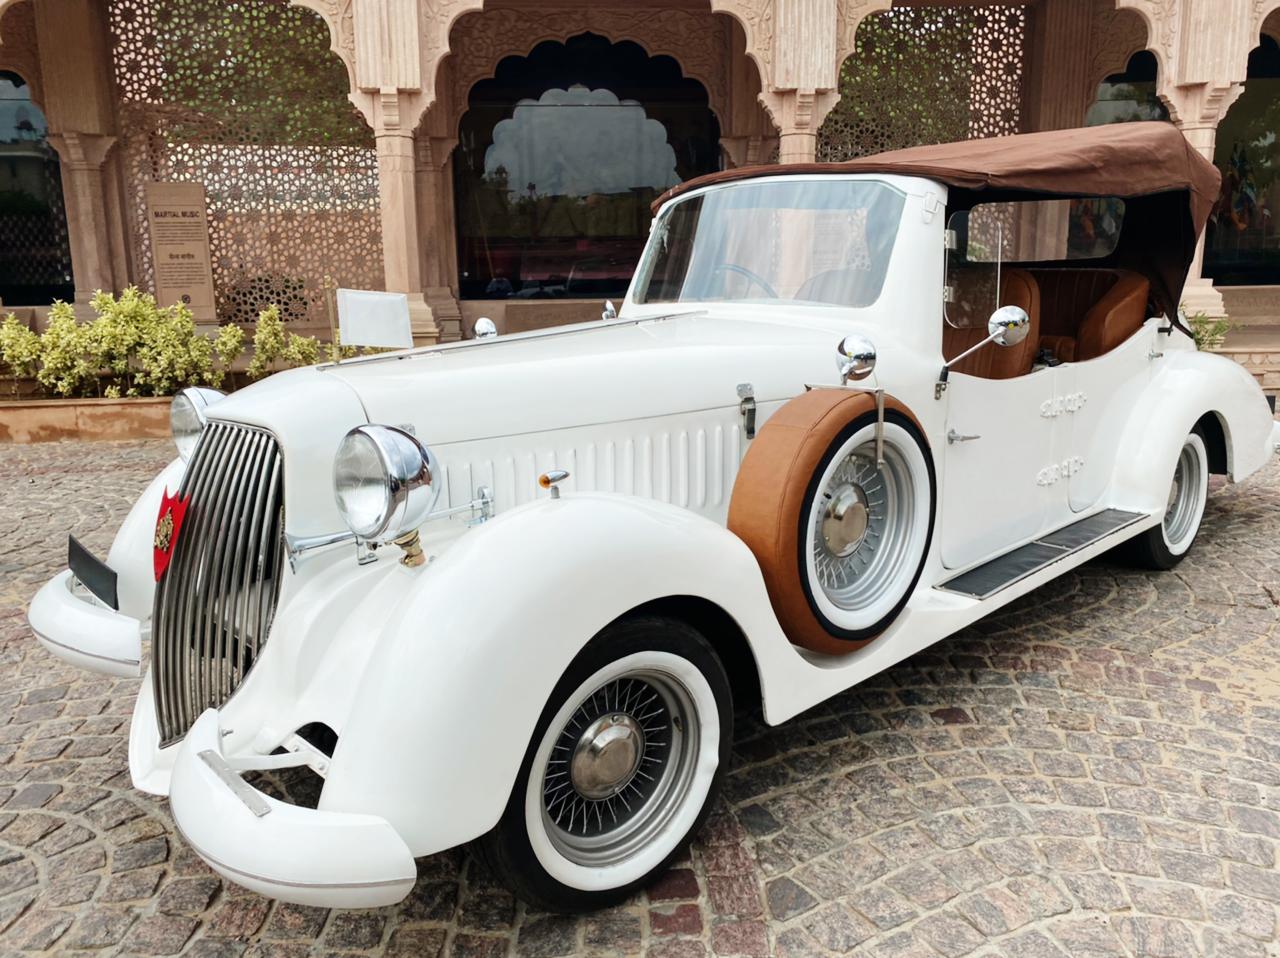 Vintage Cars on rent in Jaipur